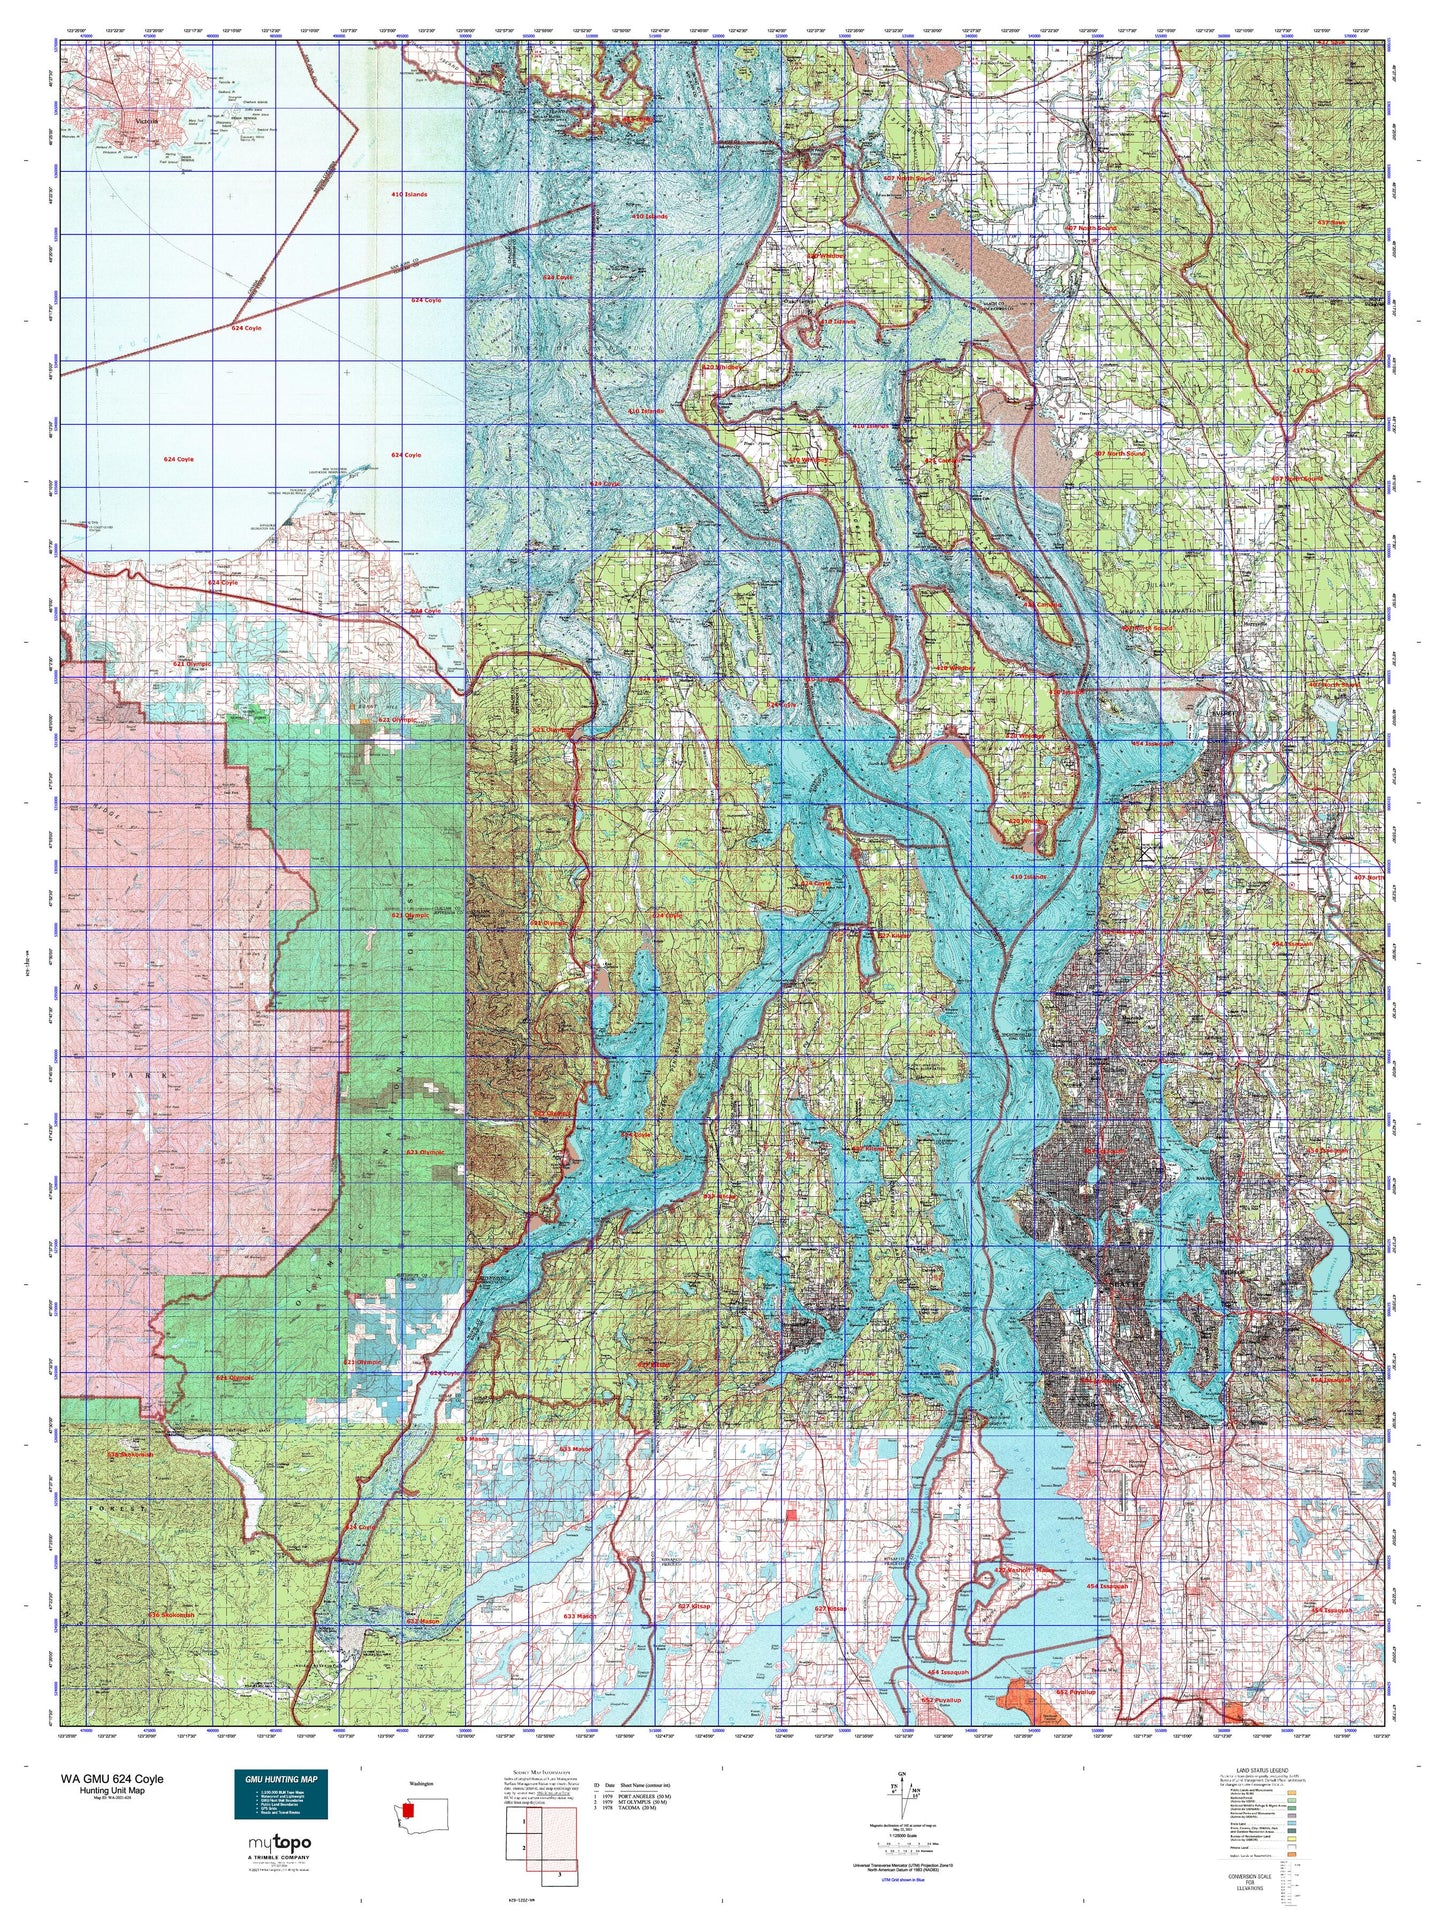 Washington GMU 624 Coyle Map Image